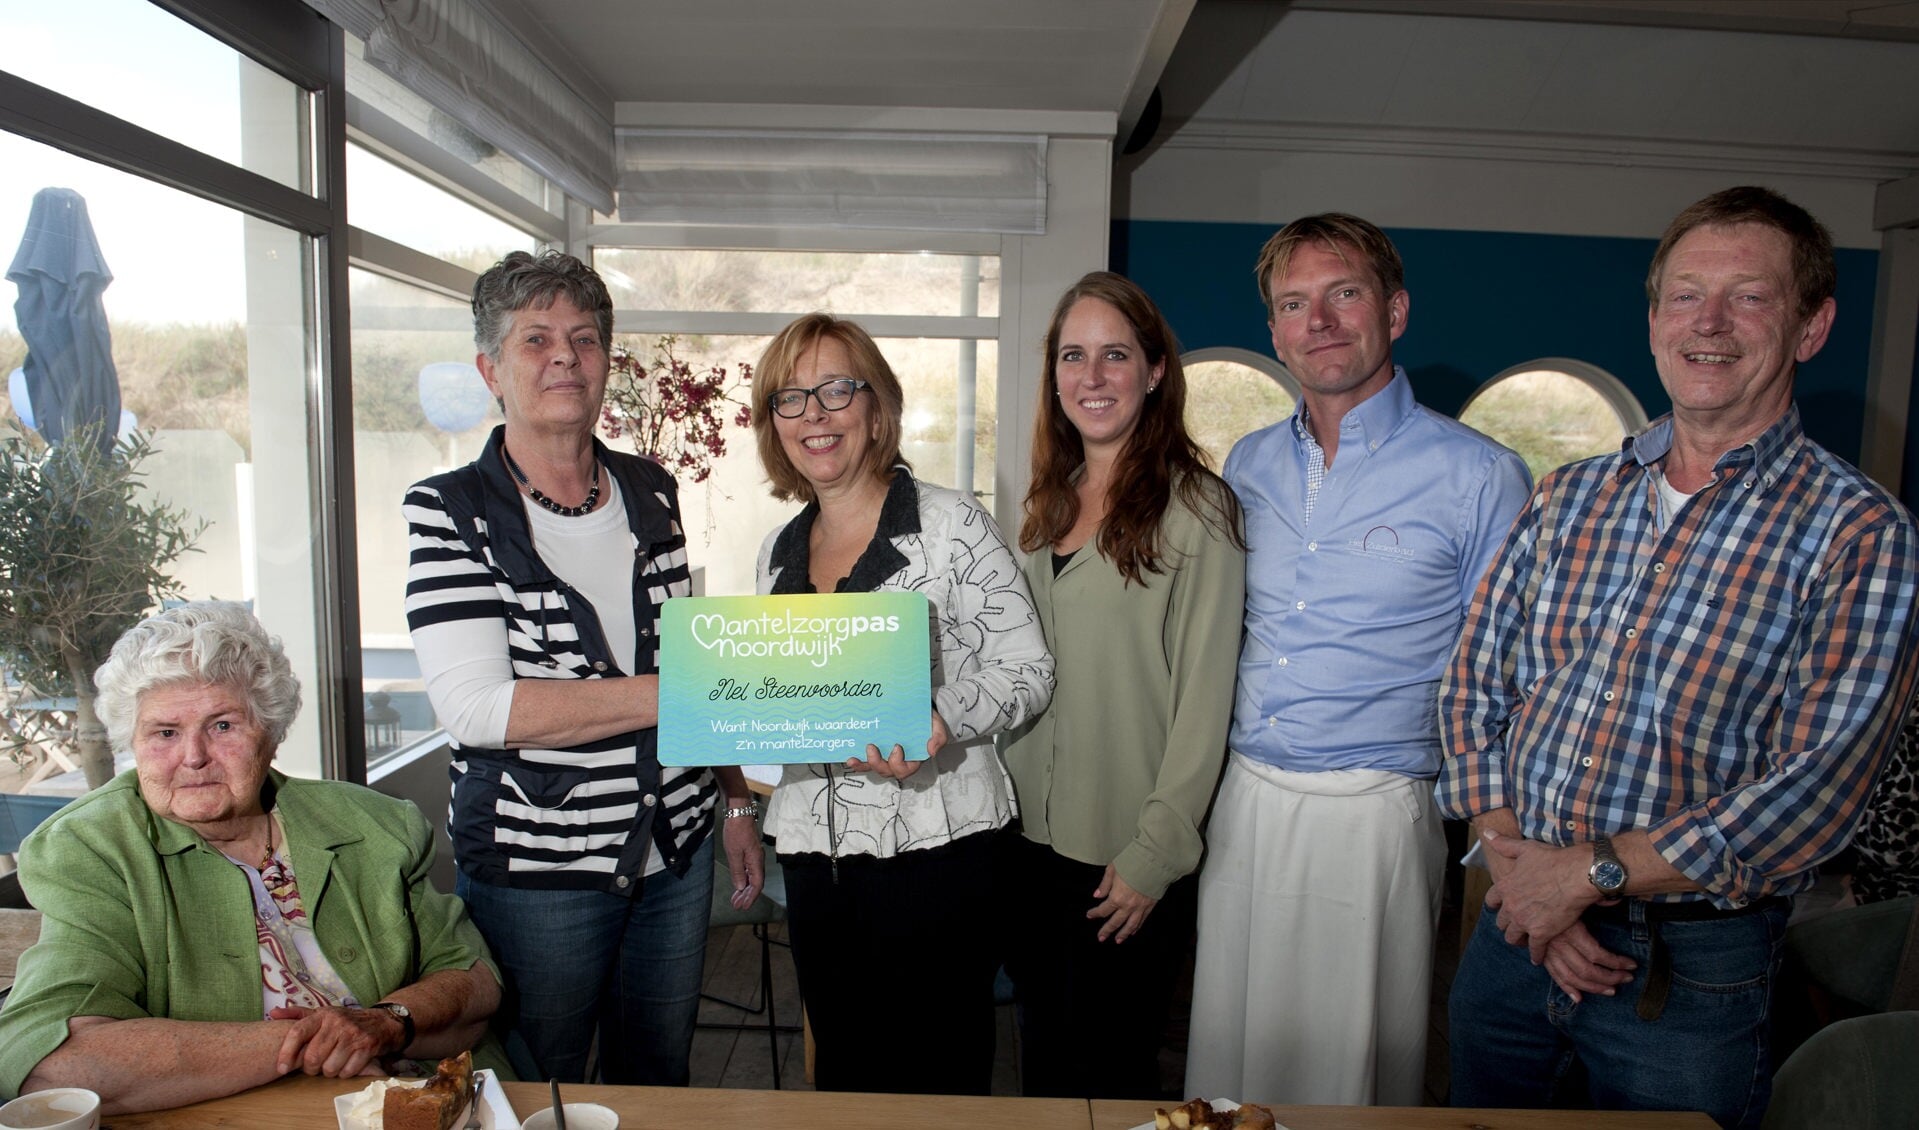 Nel Steenvoorden ontving afgelopen vrijdag de gemeentelijke waardering voor mantelzorgers uit handen van wethouder Marie José Fles. | 